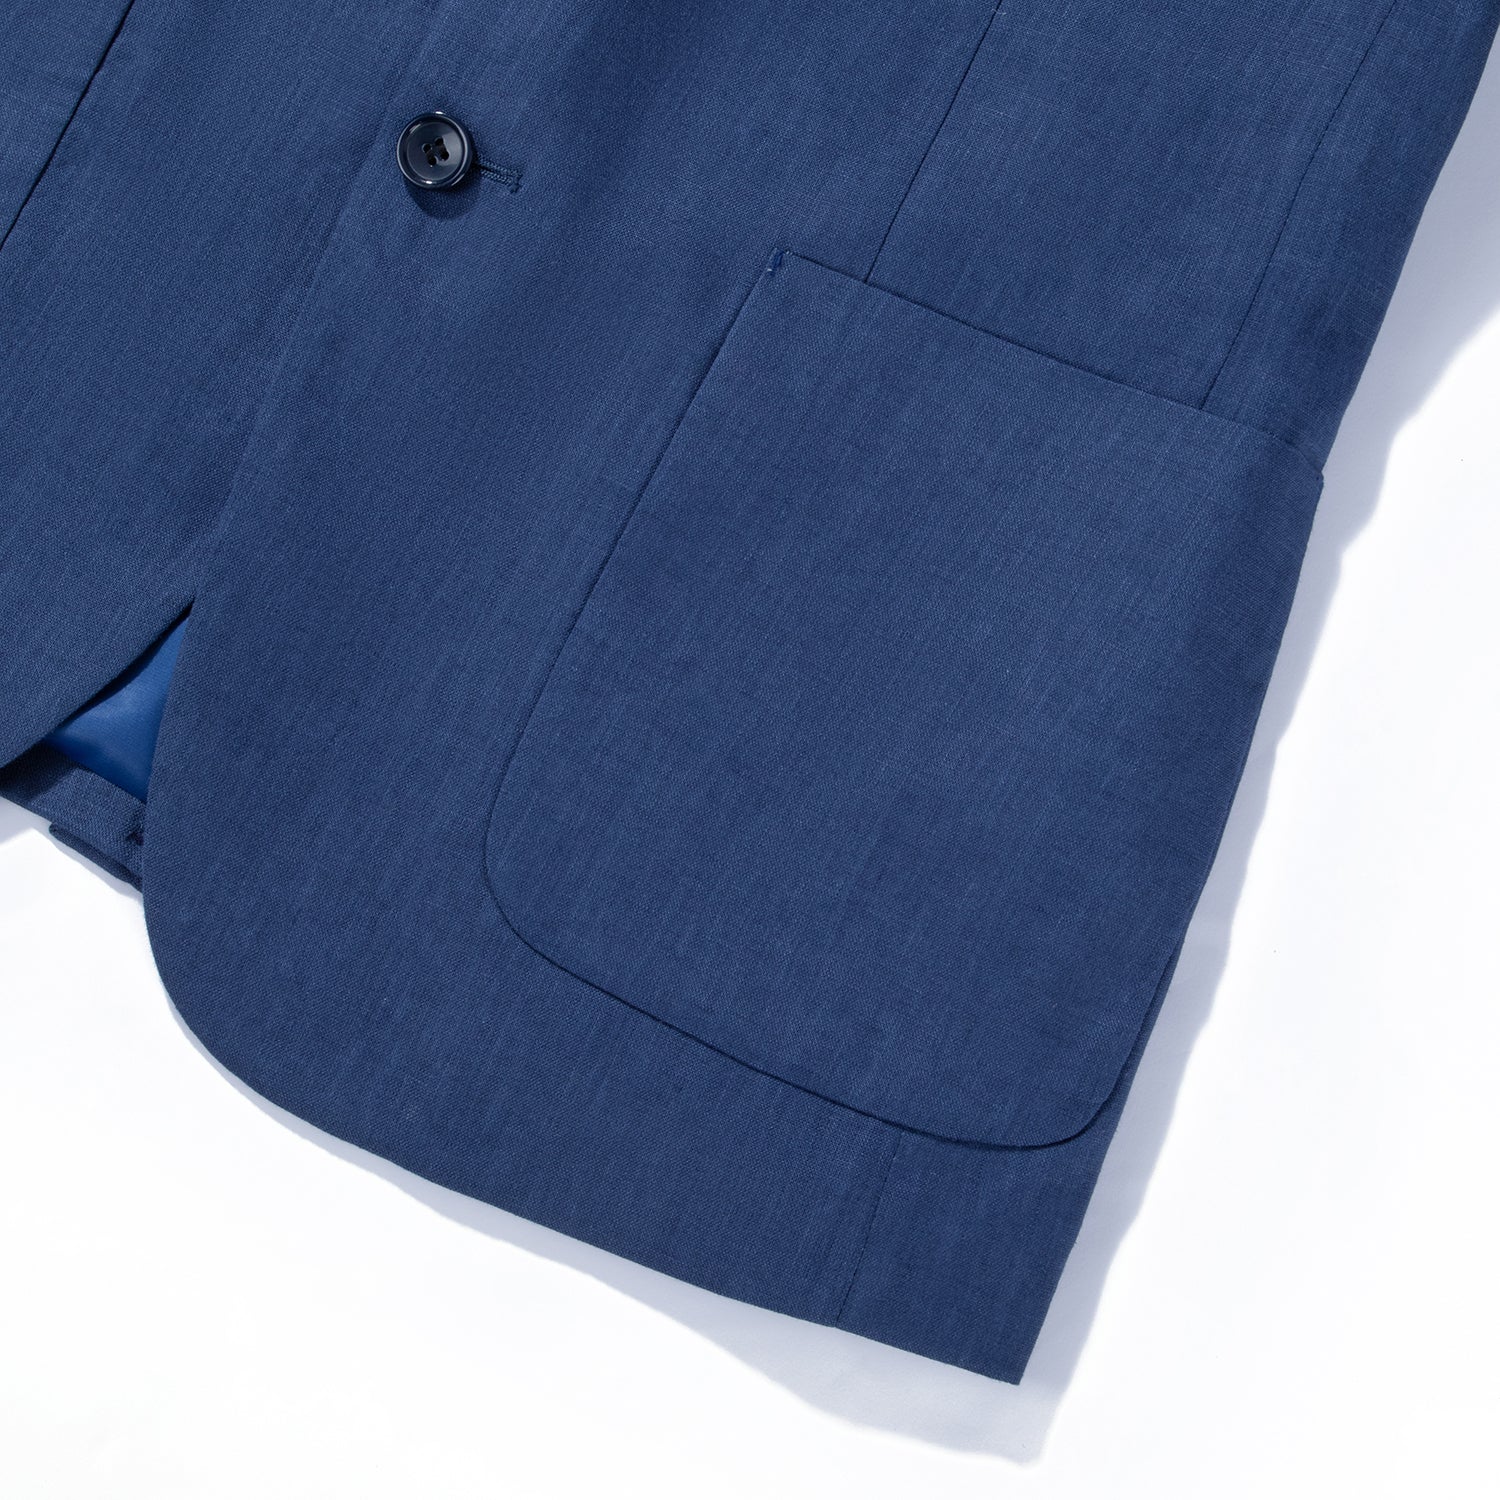 1PA1 Men's 100% Linen Dark Blue Jacket Trousers 2-Pieces Suit Set